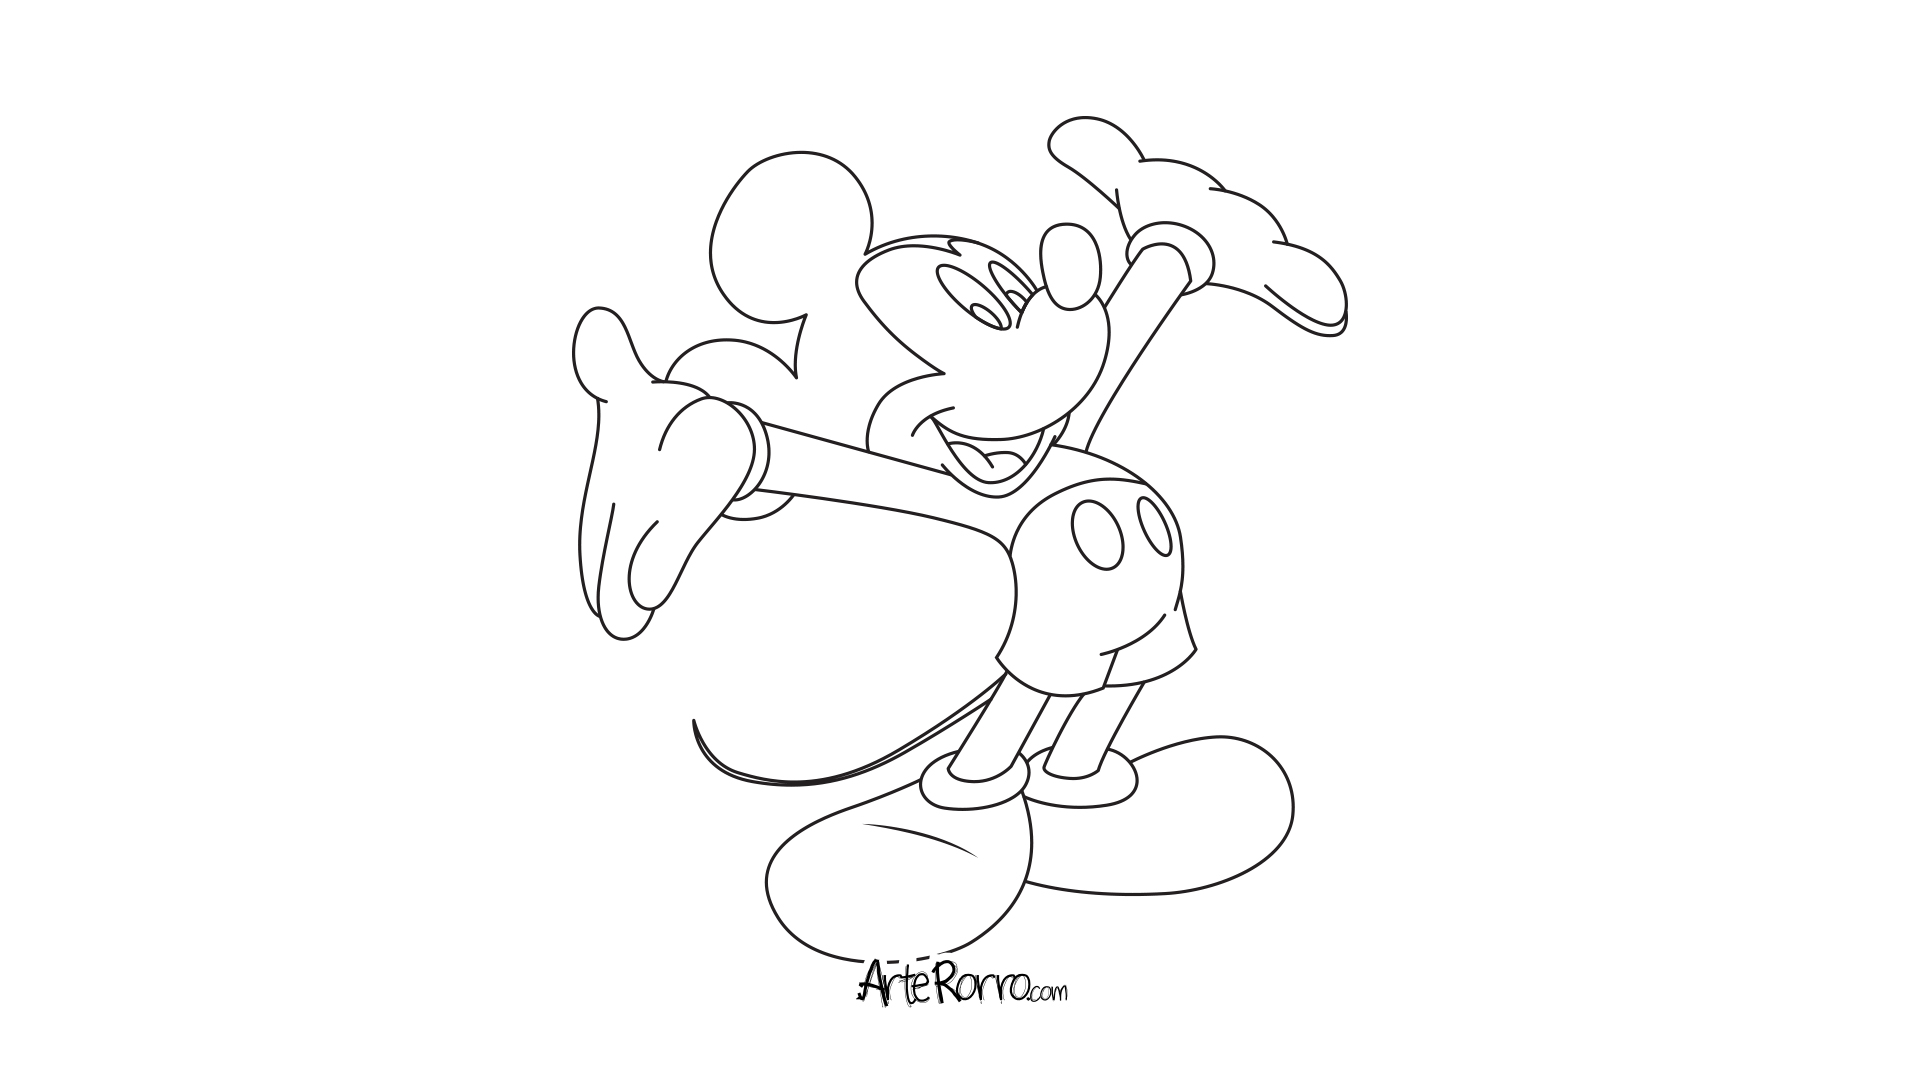 Mickey Mouse · Arte Rorro